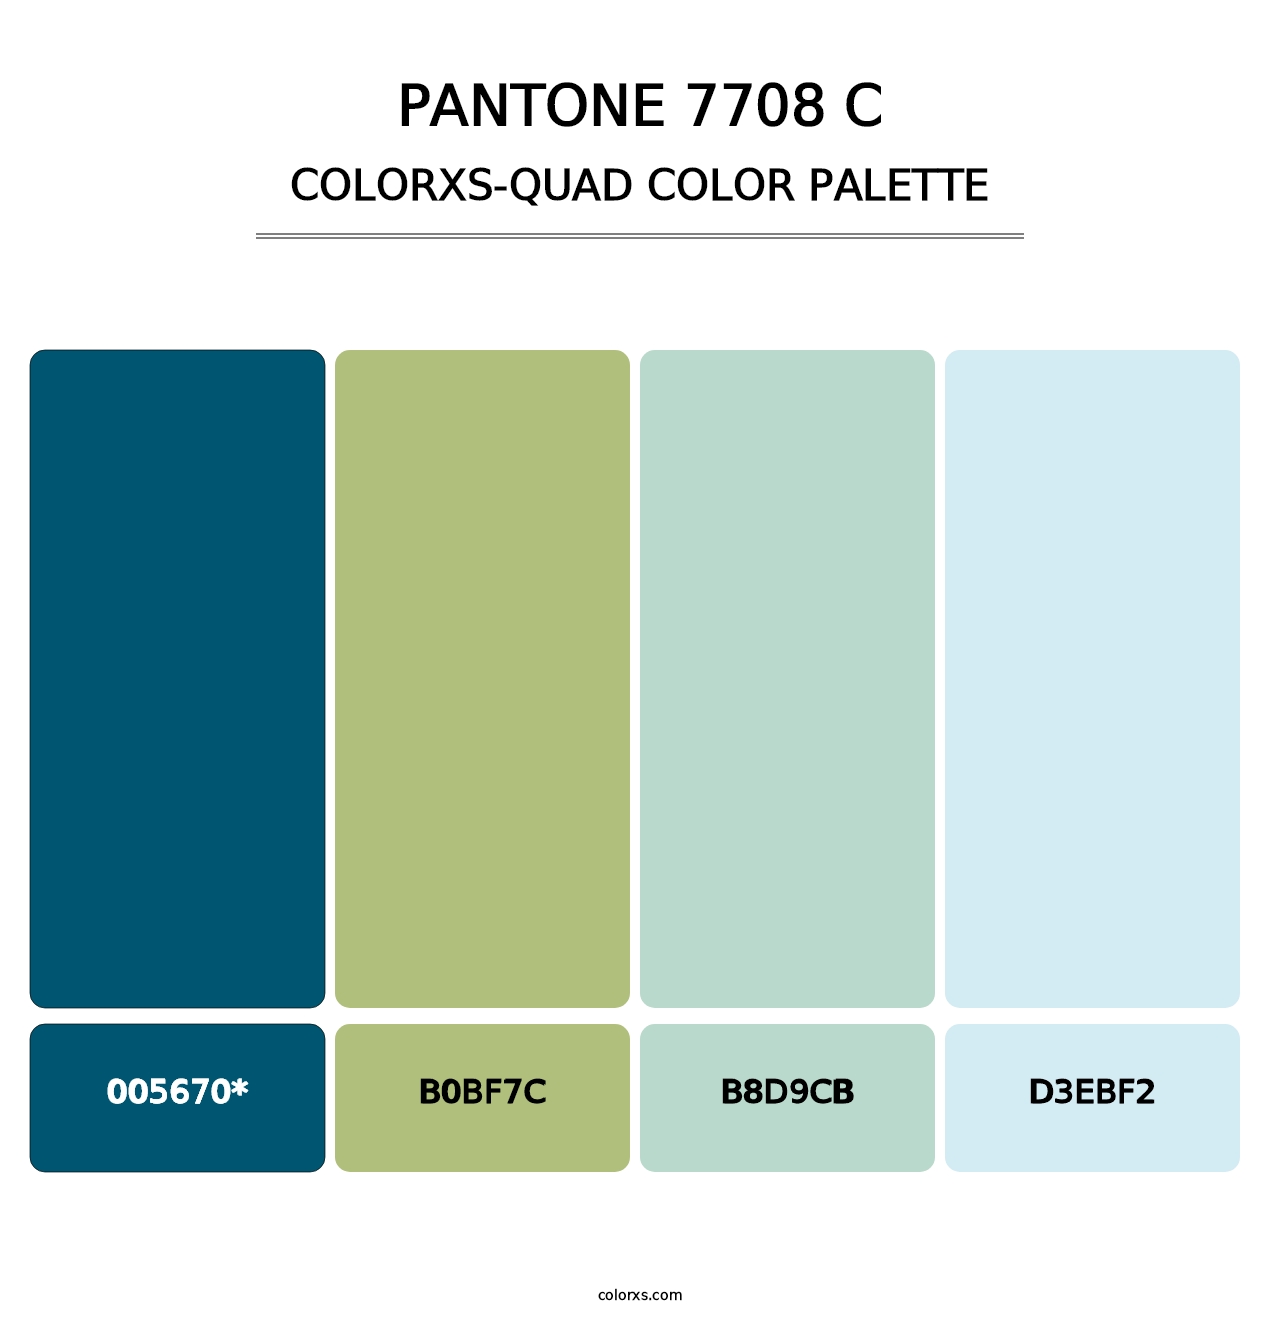 PANTONE 7708 C - Colorxs Quad Palette